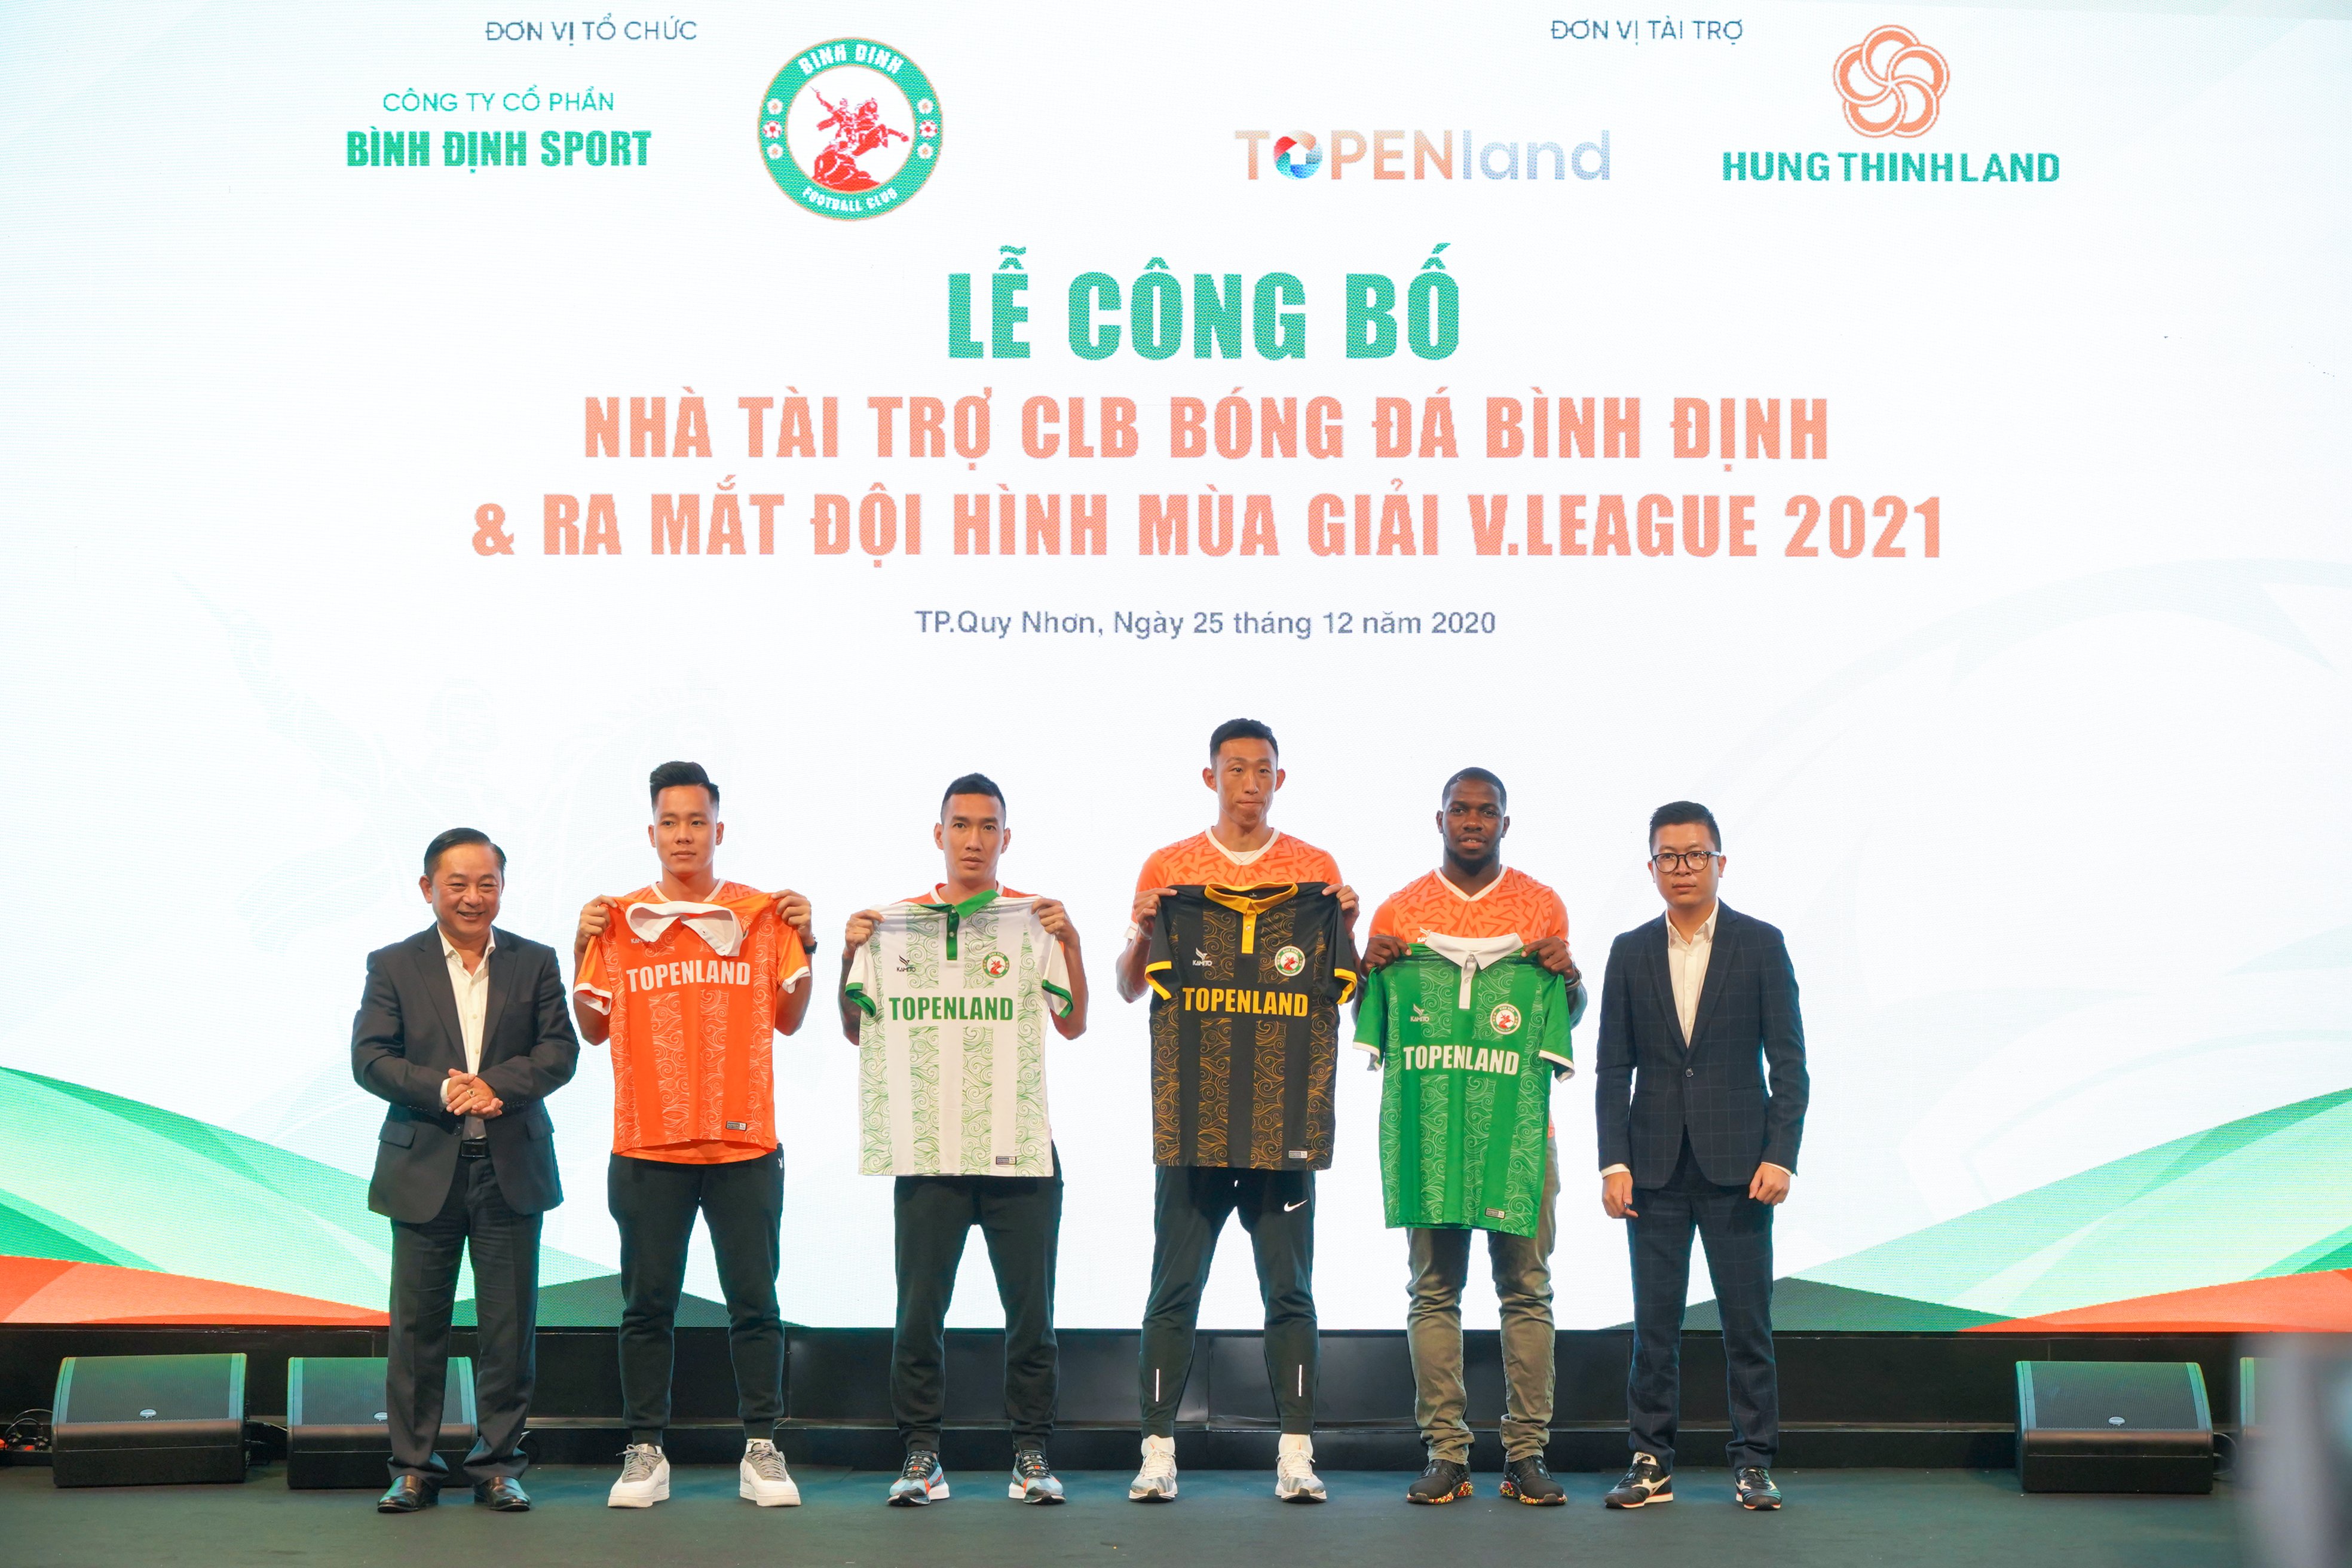 Topenland và Hưng Thịnh Land tài trợ 300 tỷ cho CLB bóng đá Topenland Bình Định trong 3 mùa giải V.League 2021 - 2023 - Bóng Đá